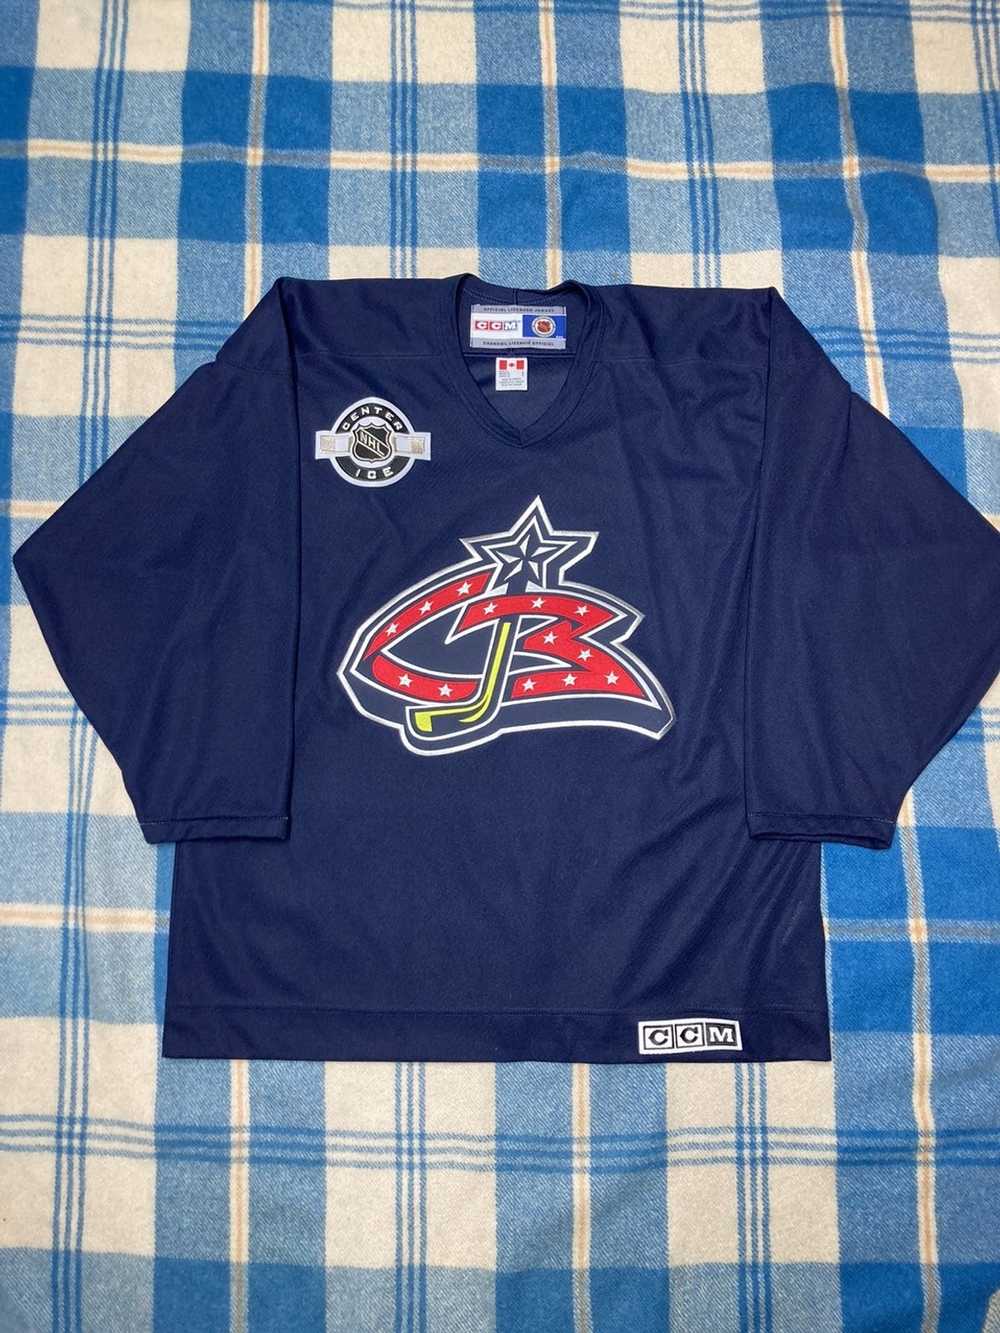 Authentic STARTER Colorado Avalanche Vintage Stitched NHL Hockey Jersey Vtg  90’s